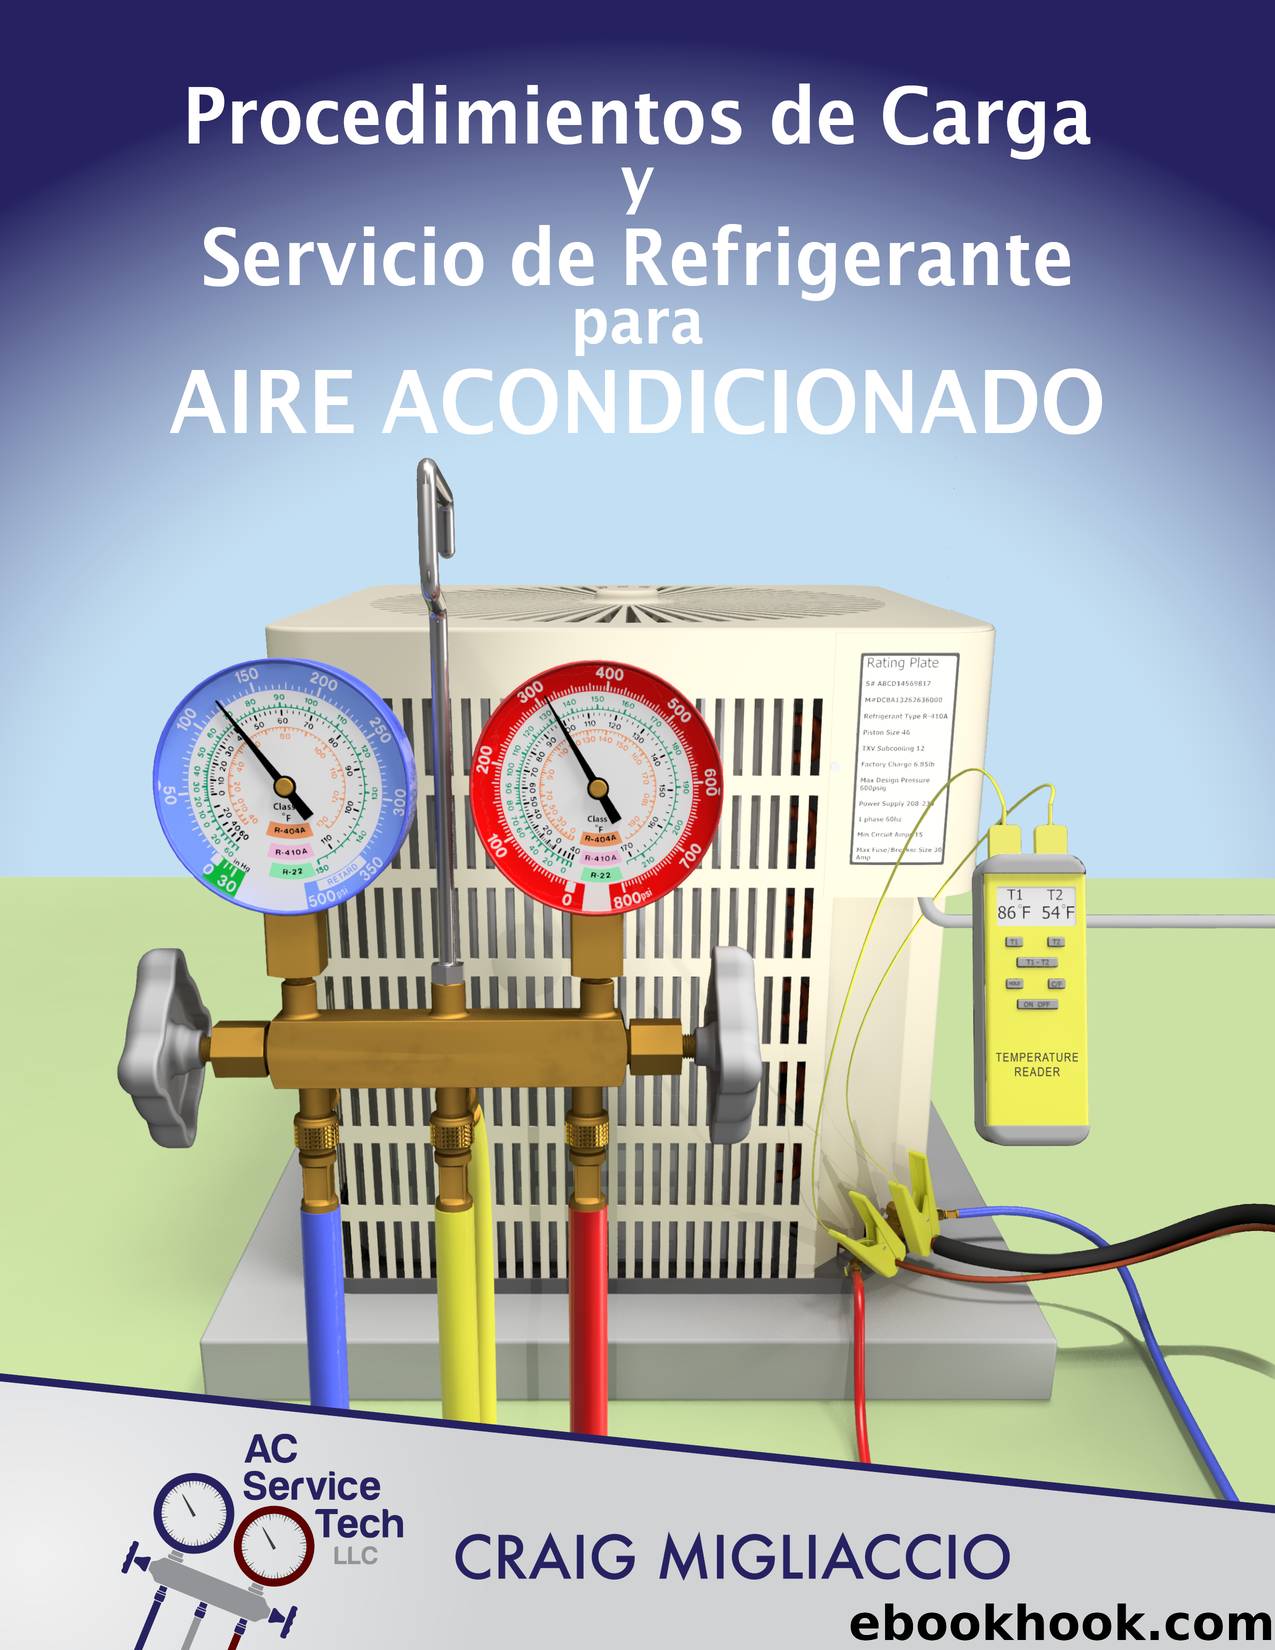 Procedimientos de Carga y Servicio de Refrigerante para Aire Acondicionado by Craig Migliaccio AC Service Tech LLC